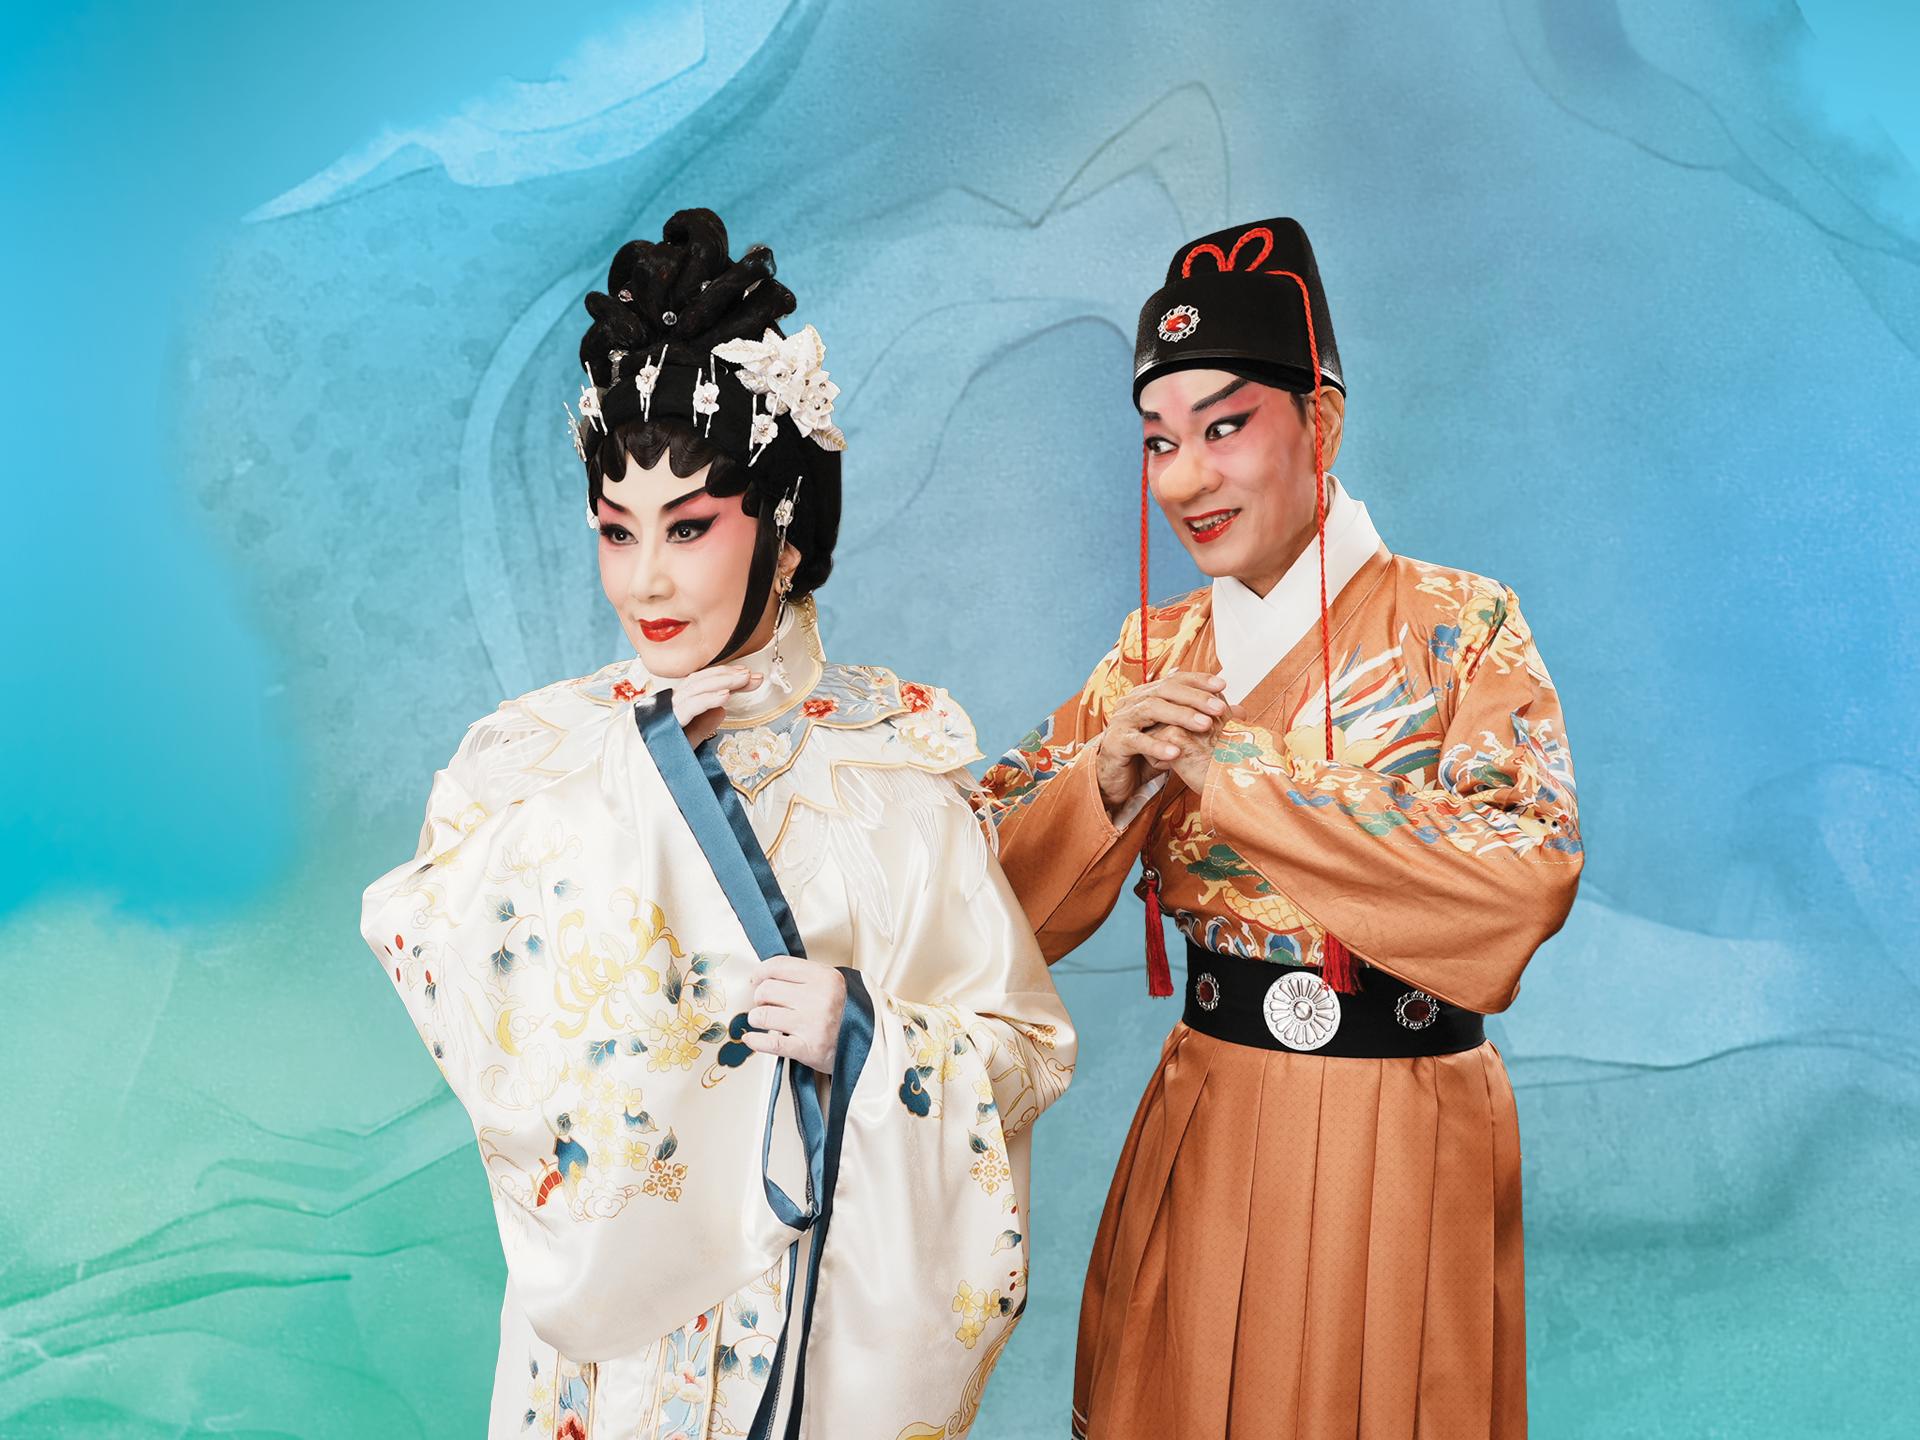 首屆「中華文化節」將於六月至九月期間舉行。圖示「中國戲曲節」開幕節目——新編粵劇《大鼻子情聖》的劇照。